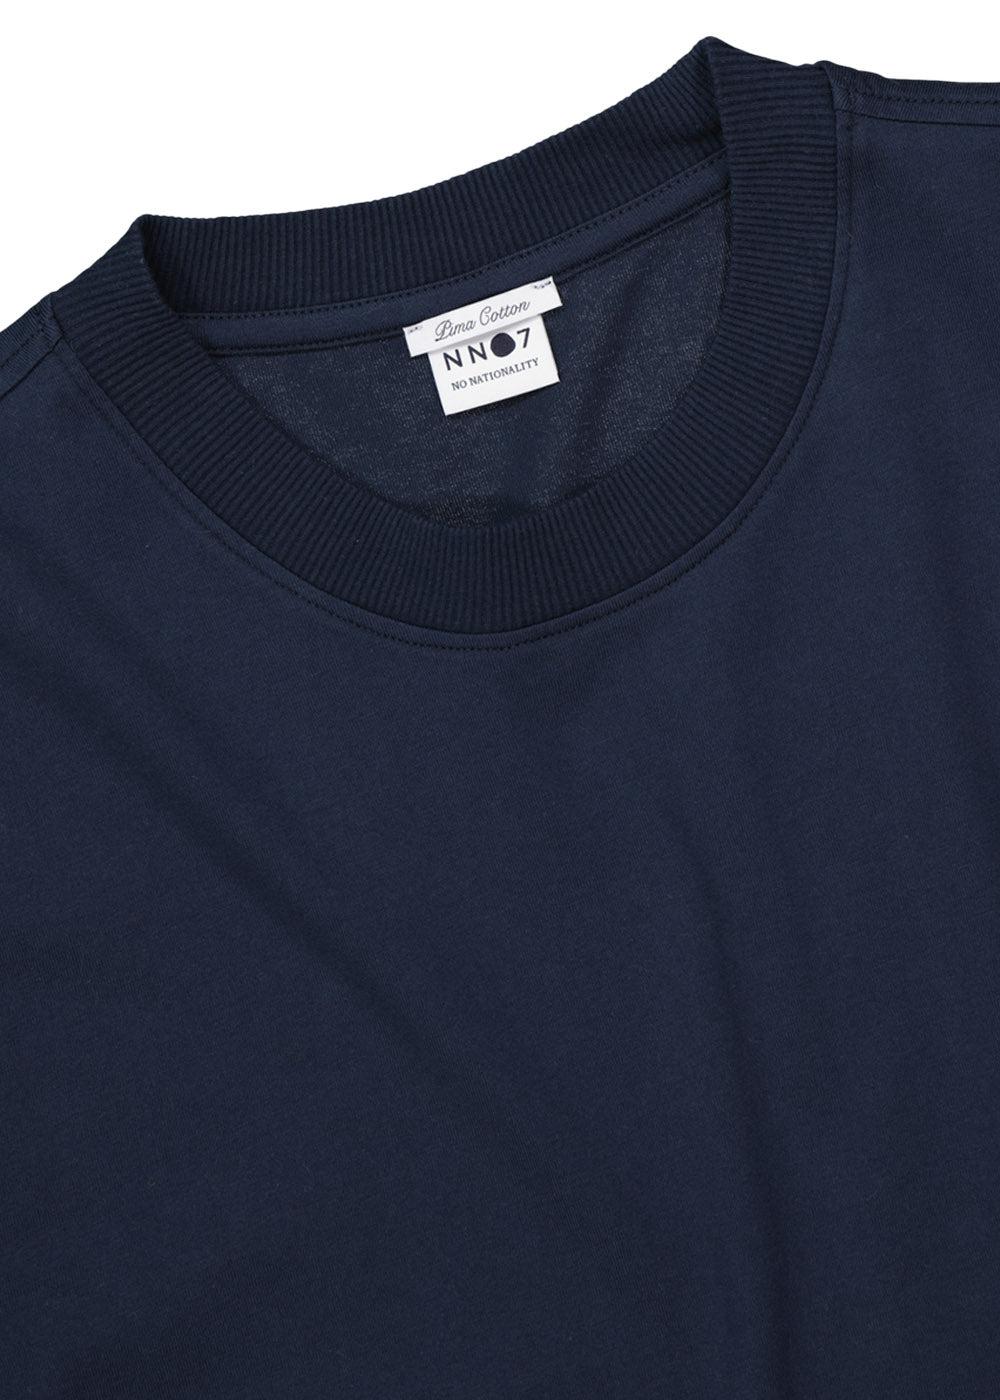 Adam T-shirt 3209 - Navy Blue